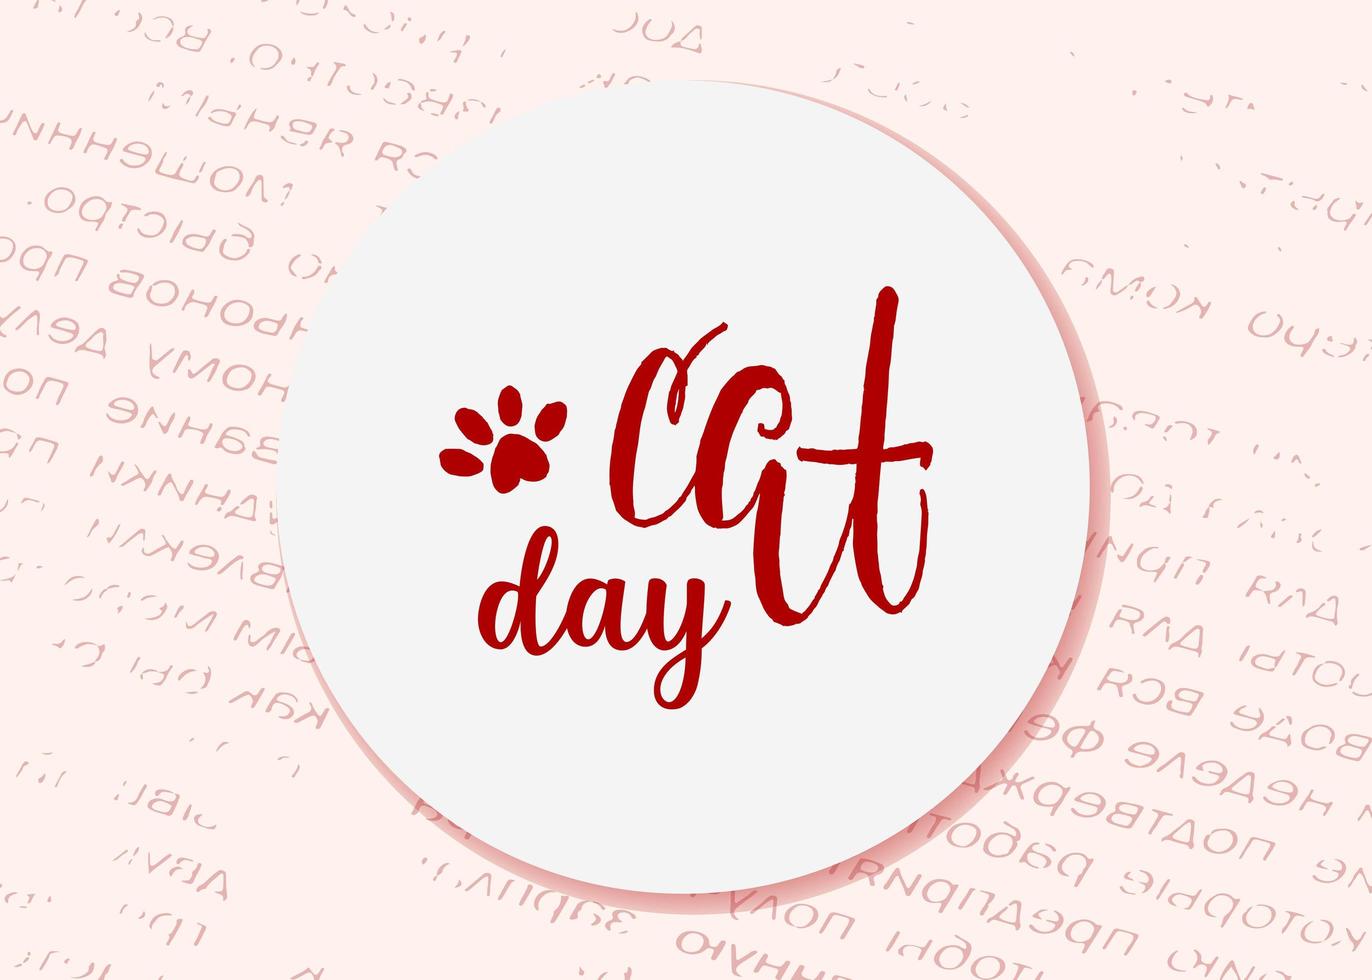 dia mundial do gato. feriado internacional. ilustração vetorial. letras em um fundo rosa. vetor